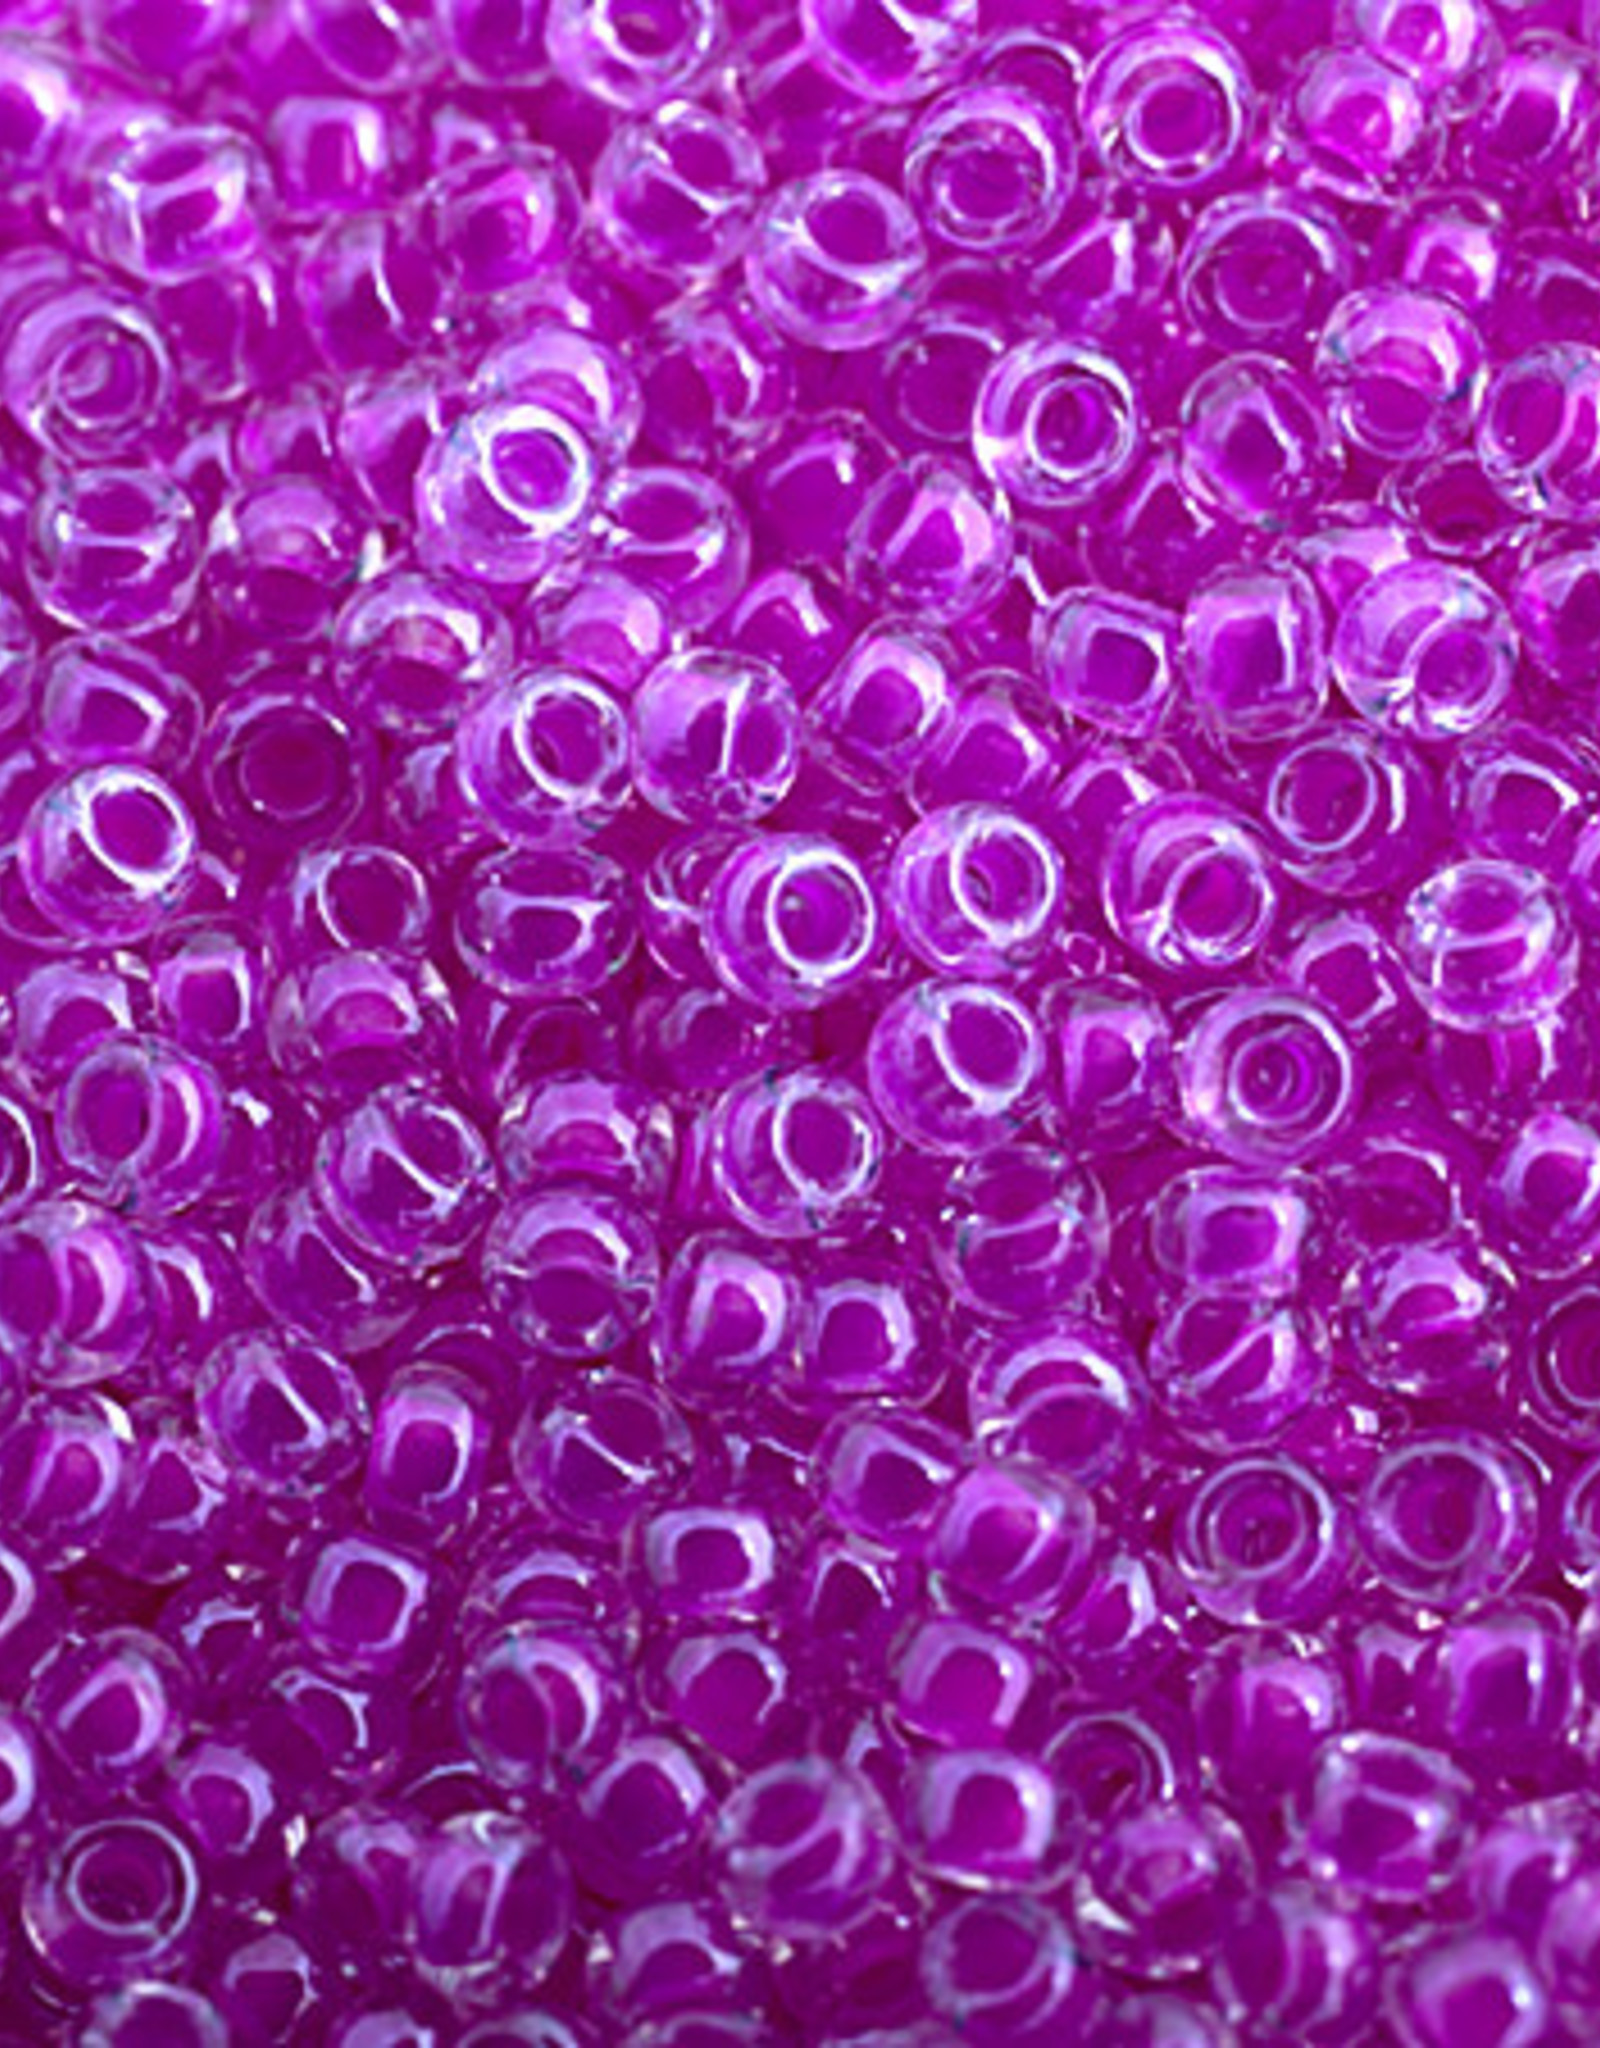 Miyuki Seed Beads Miyuki Seed Bead 11/0 apx.22g Fuchsia Luminous Neon C/L 4302v